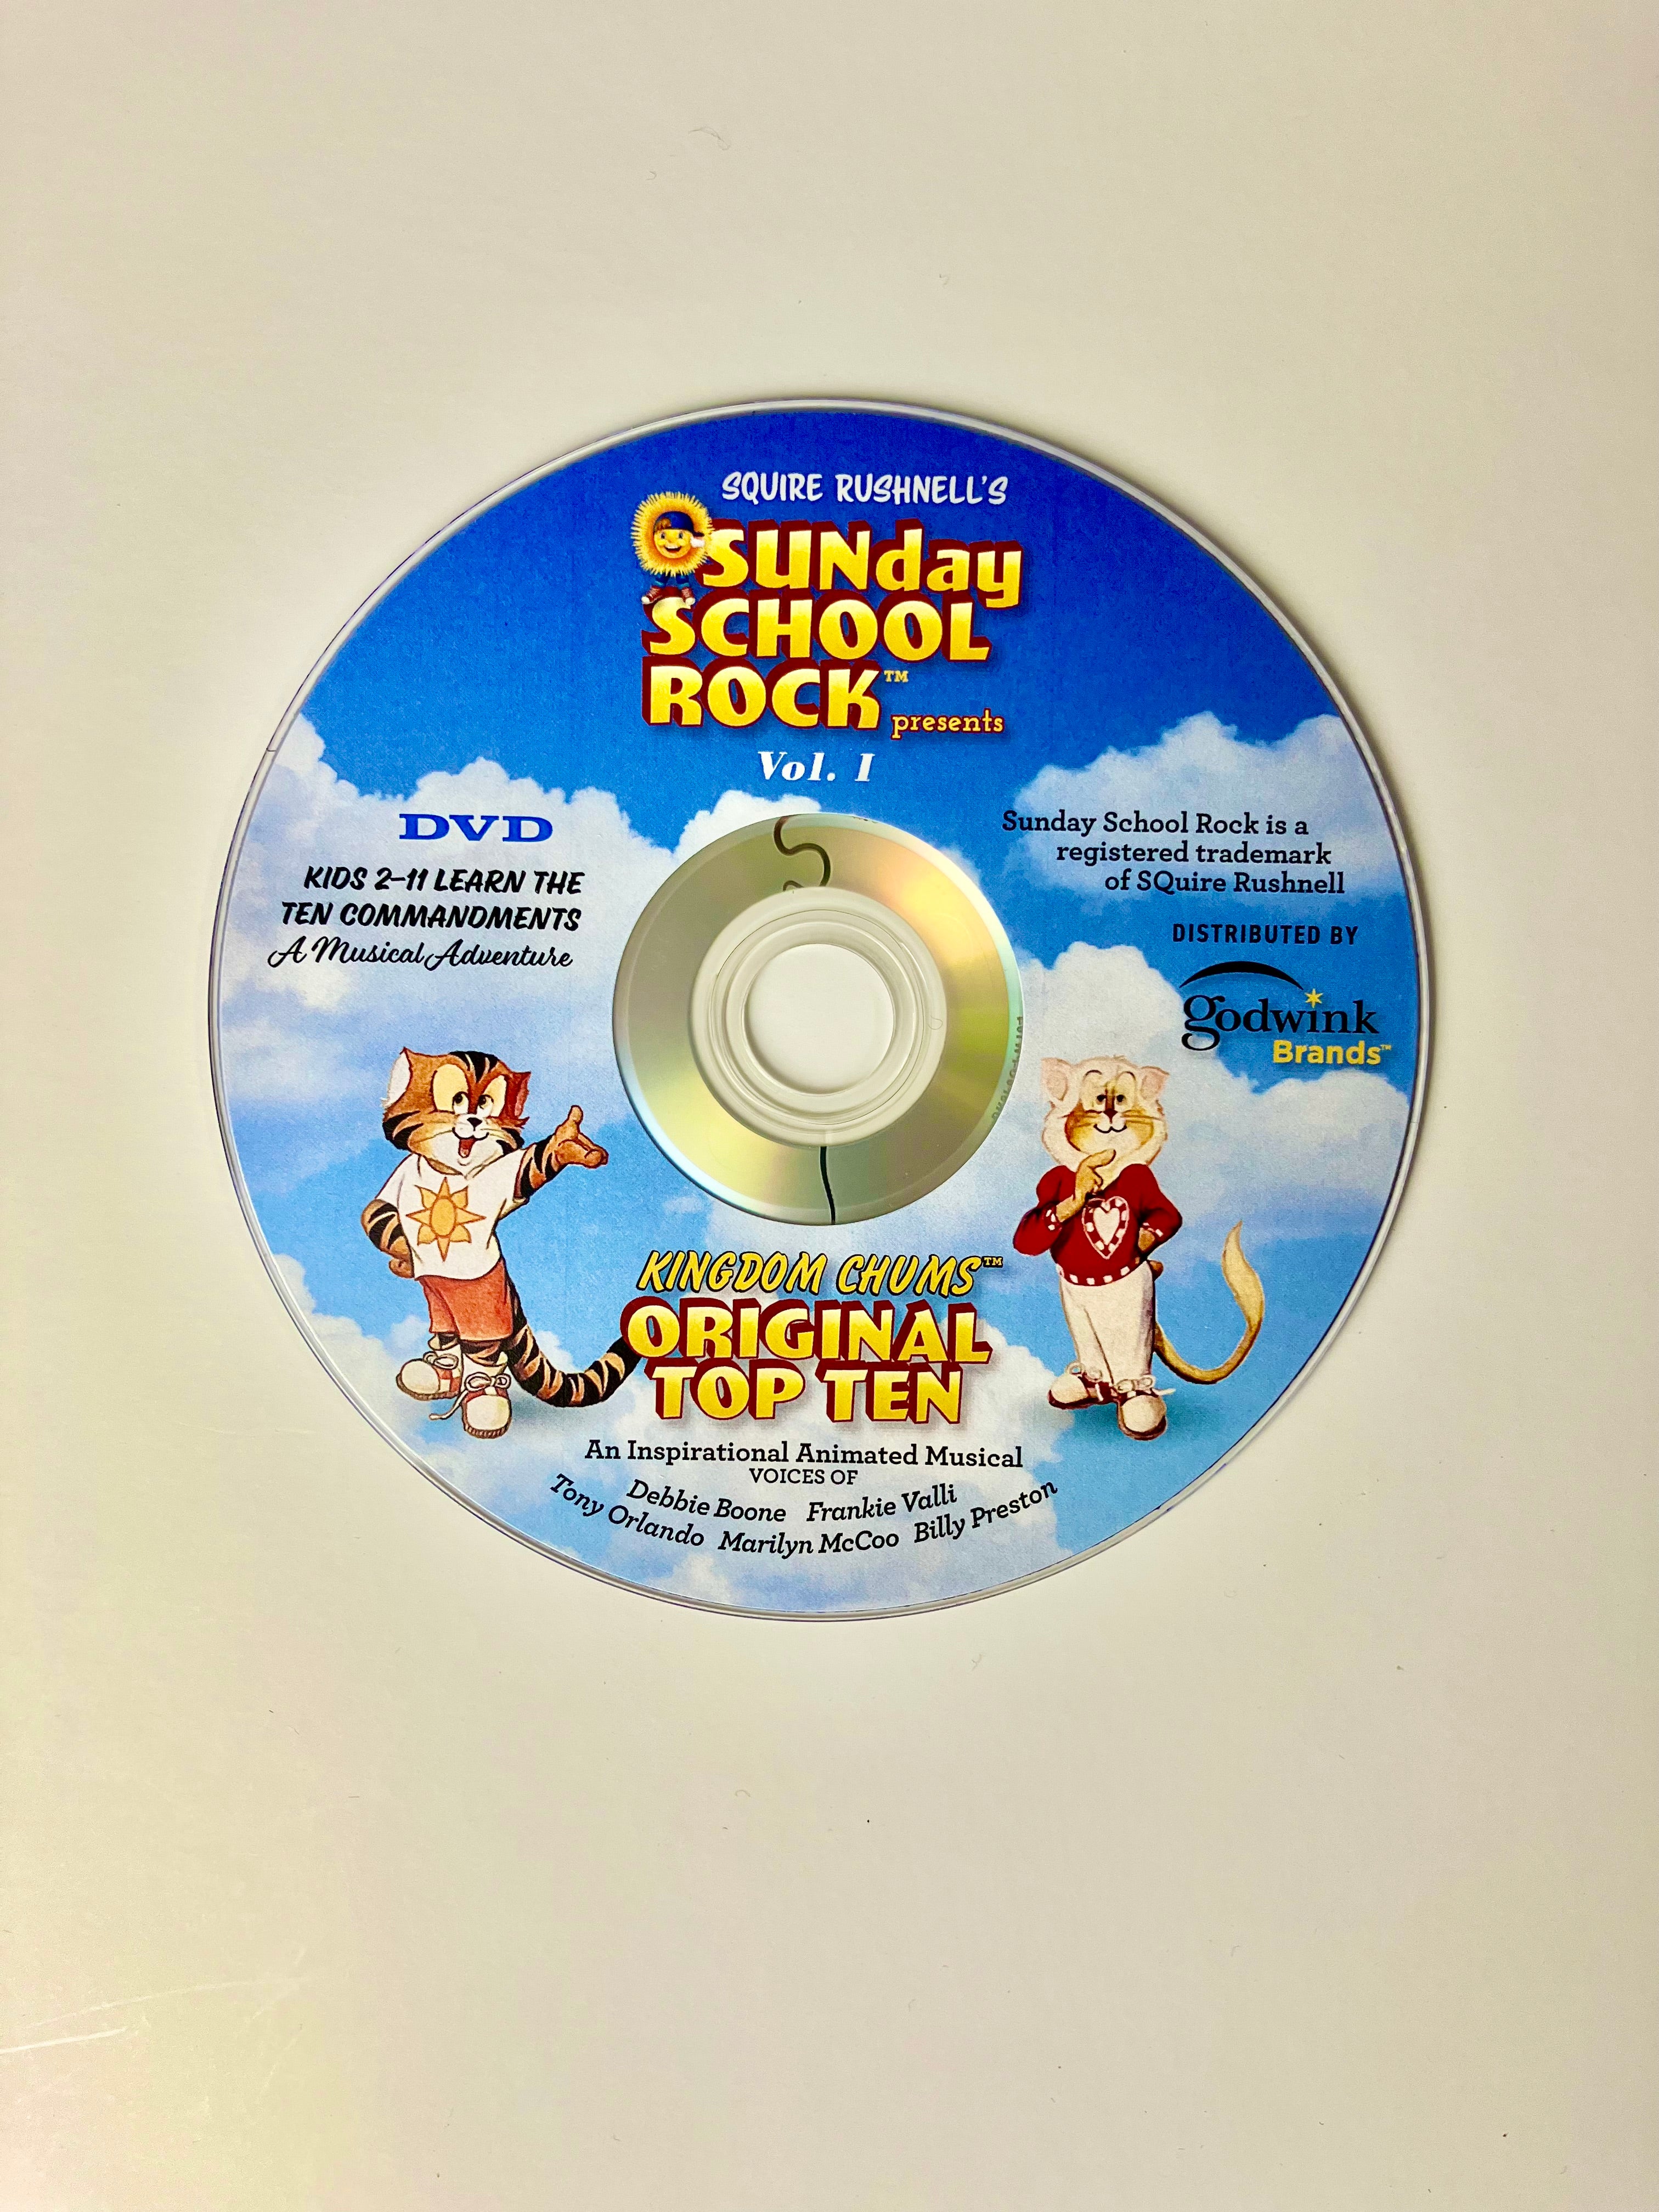 gået i stykker afspejle Tomhed Kingdom Chums ORIGINAL TOP TEN DVD - FREE SHIPPING in USA | Godwinks